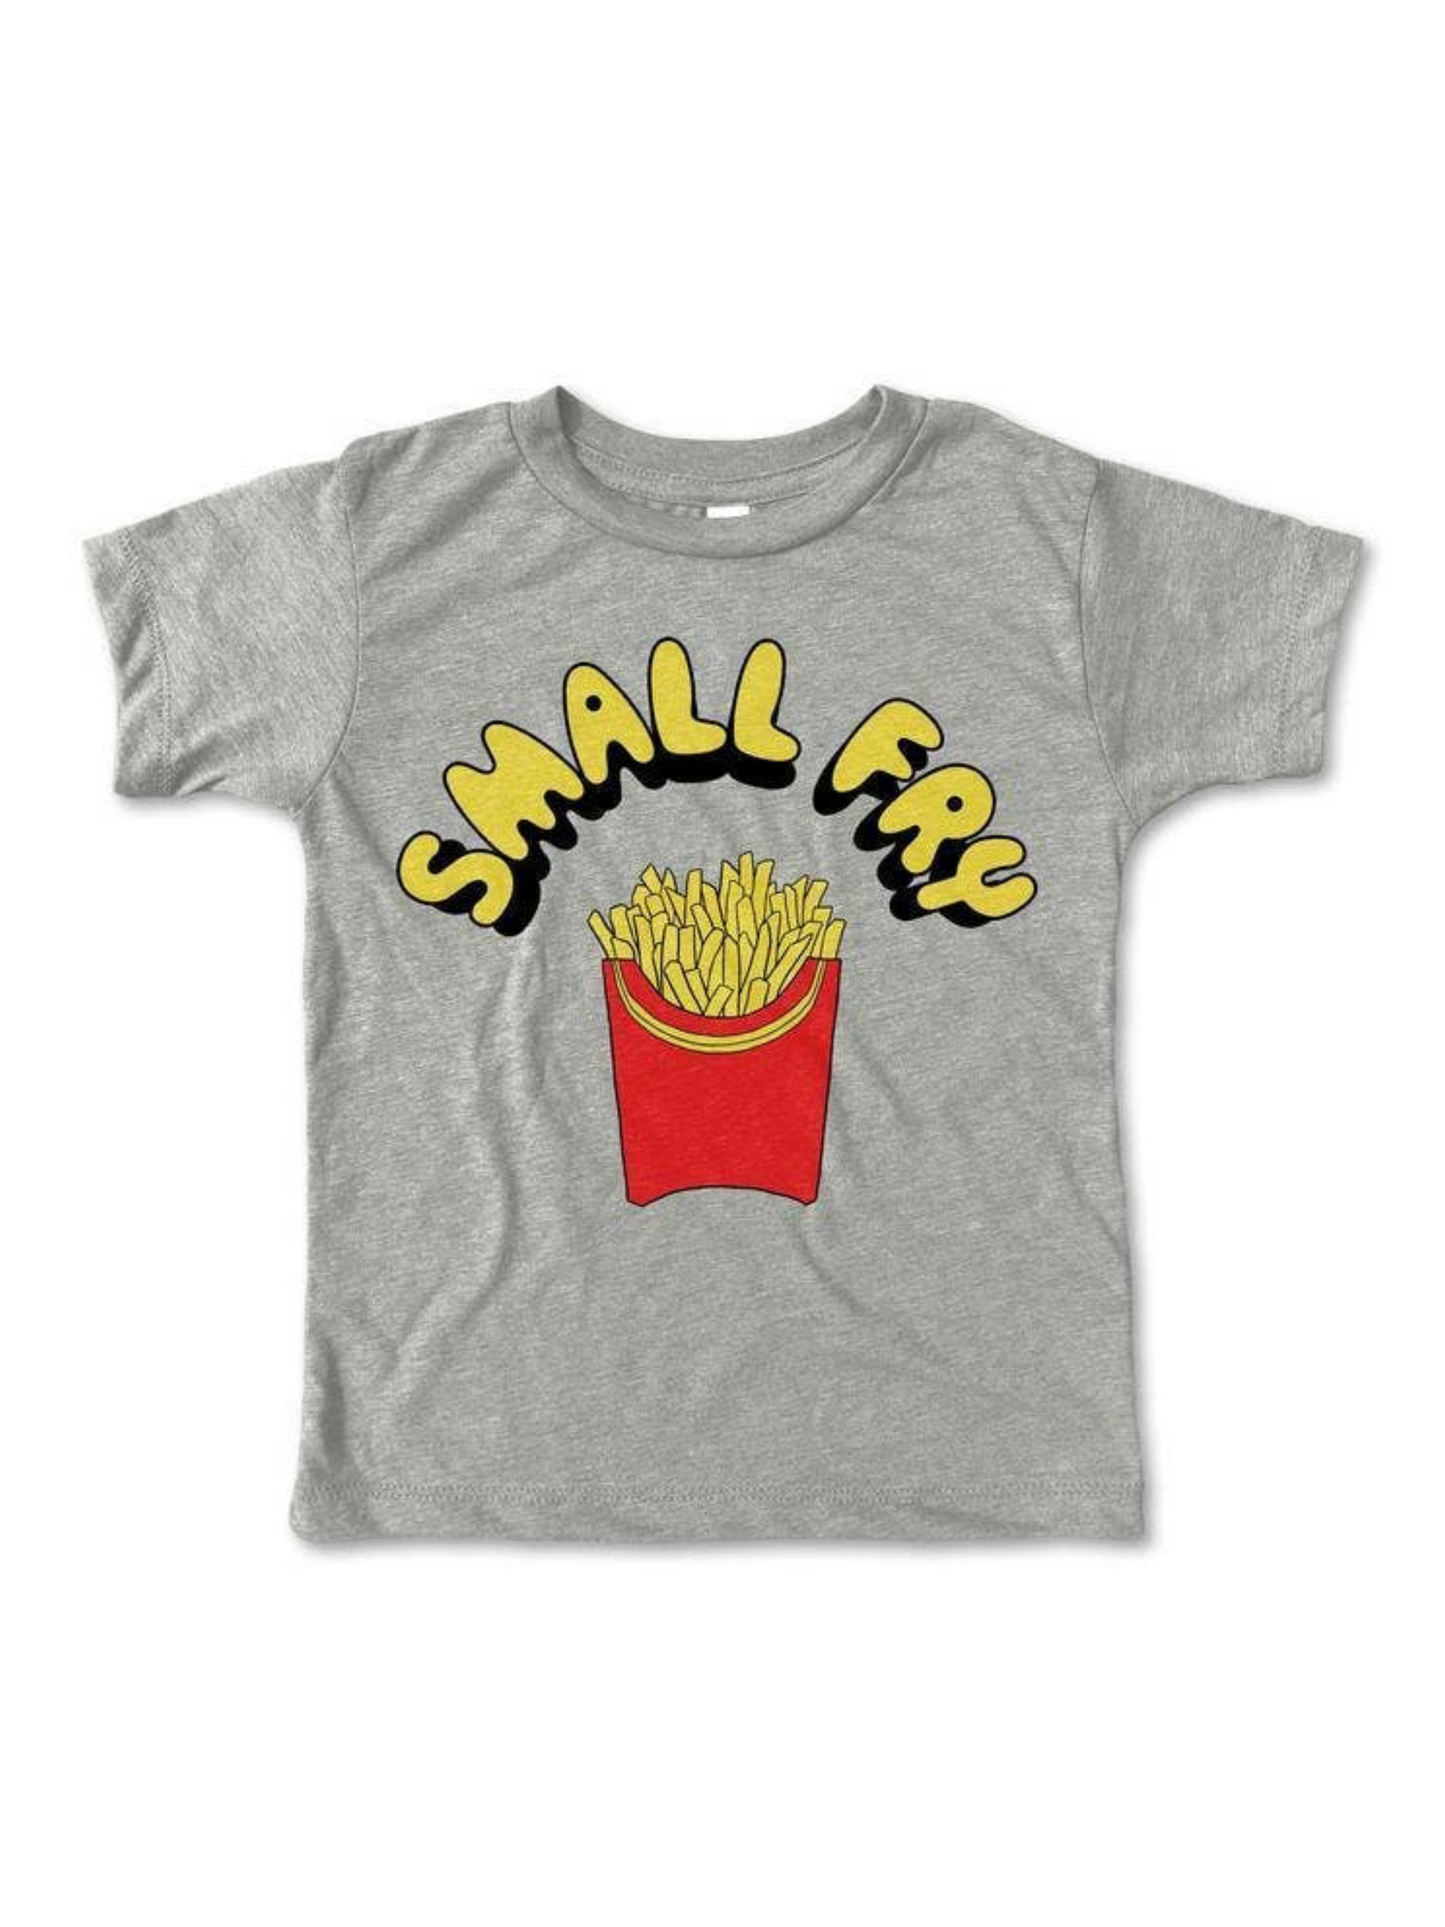 kids small fry graphic tshirt